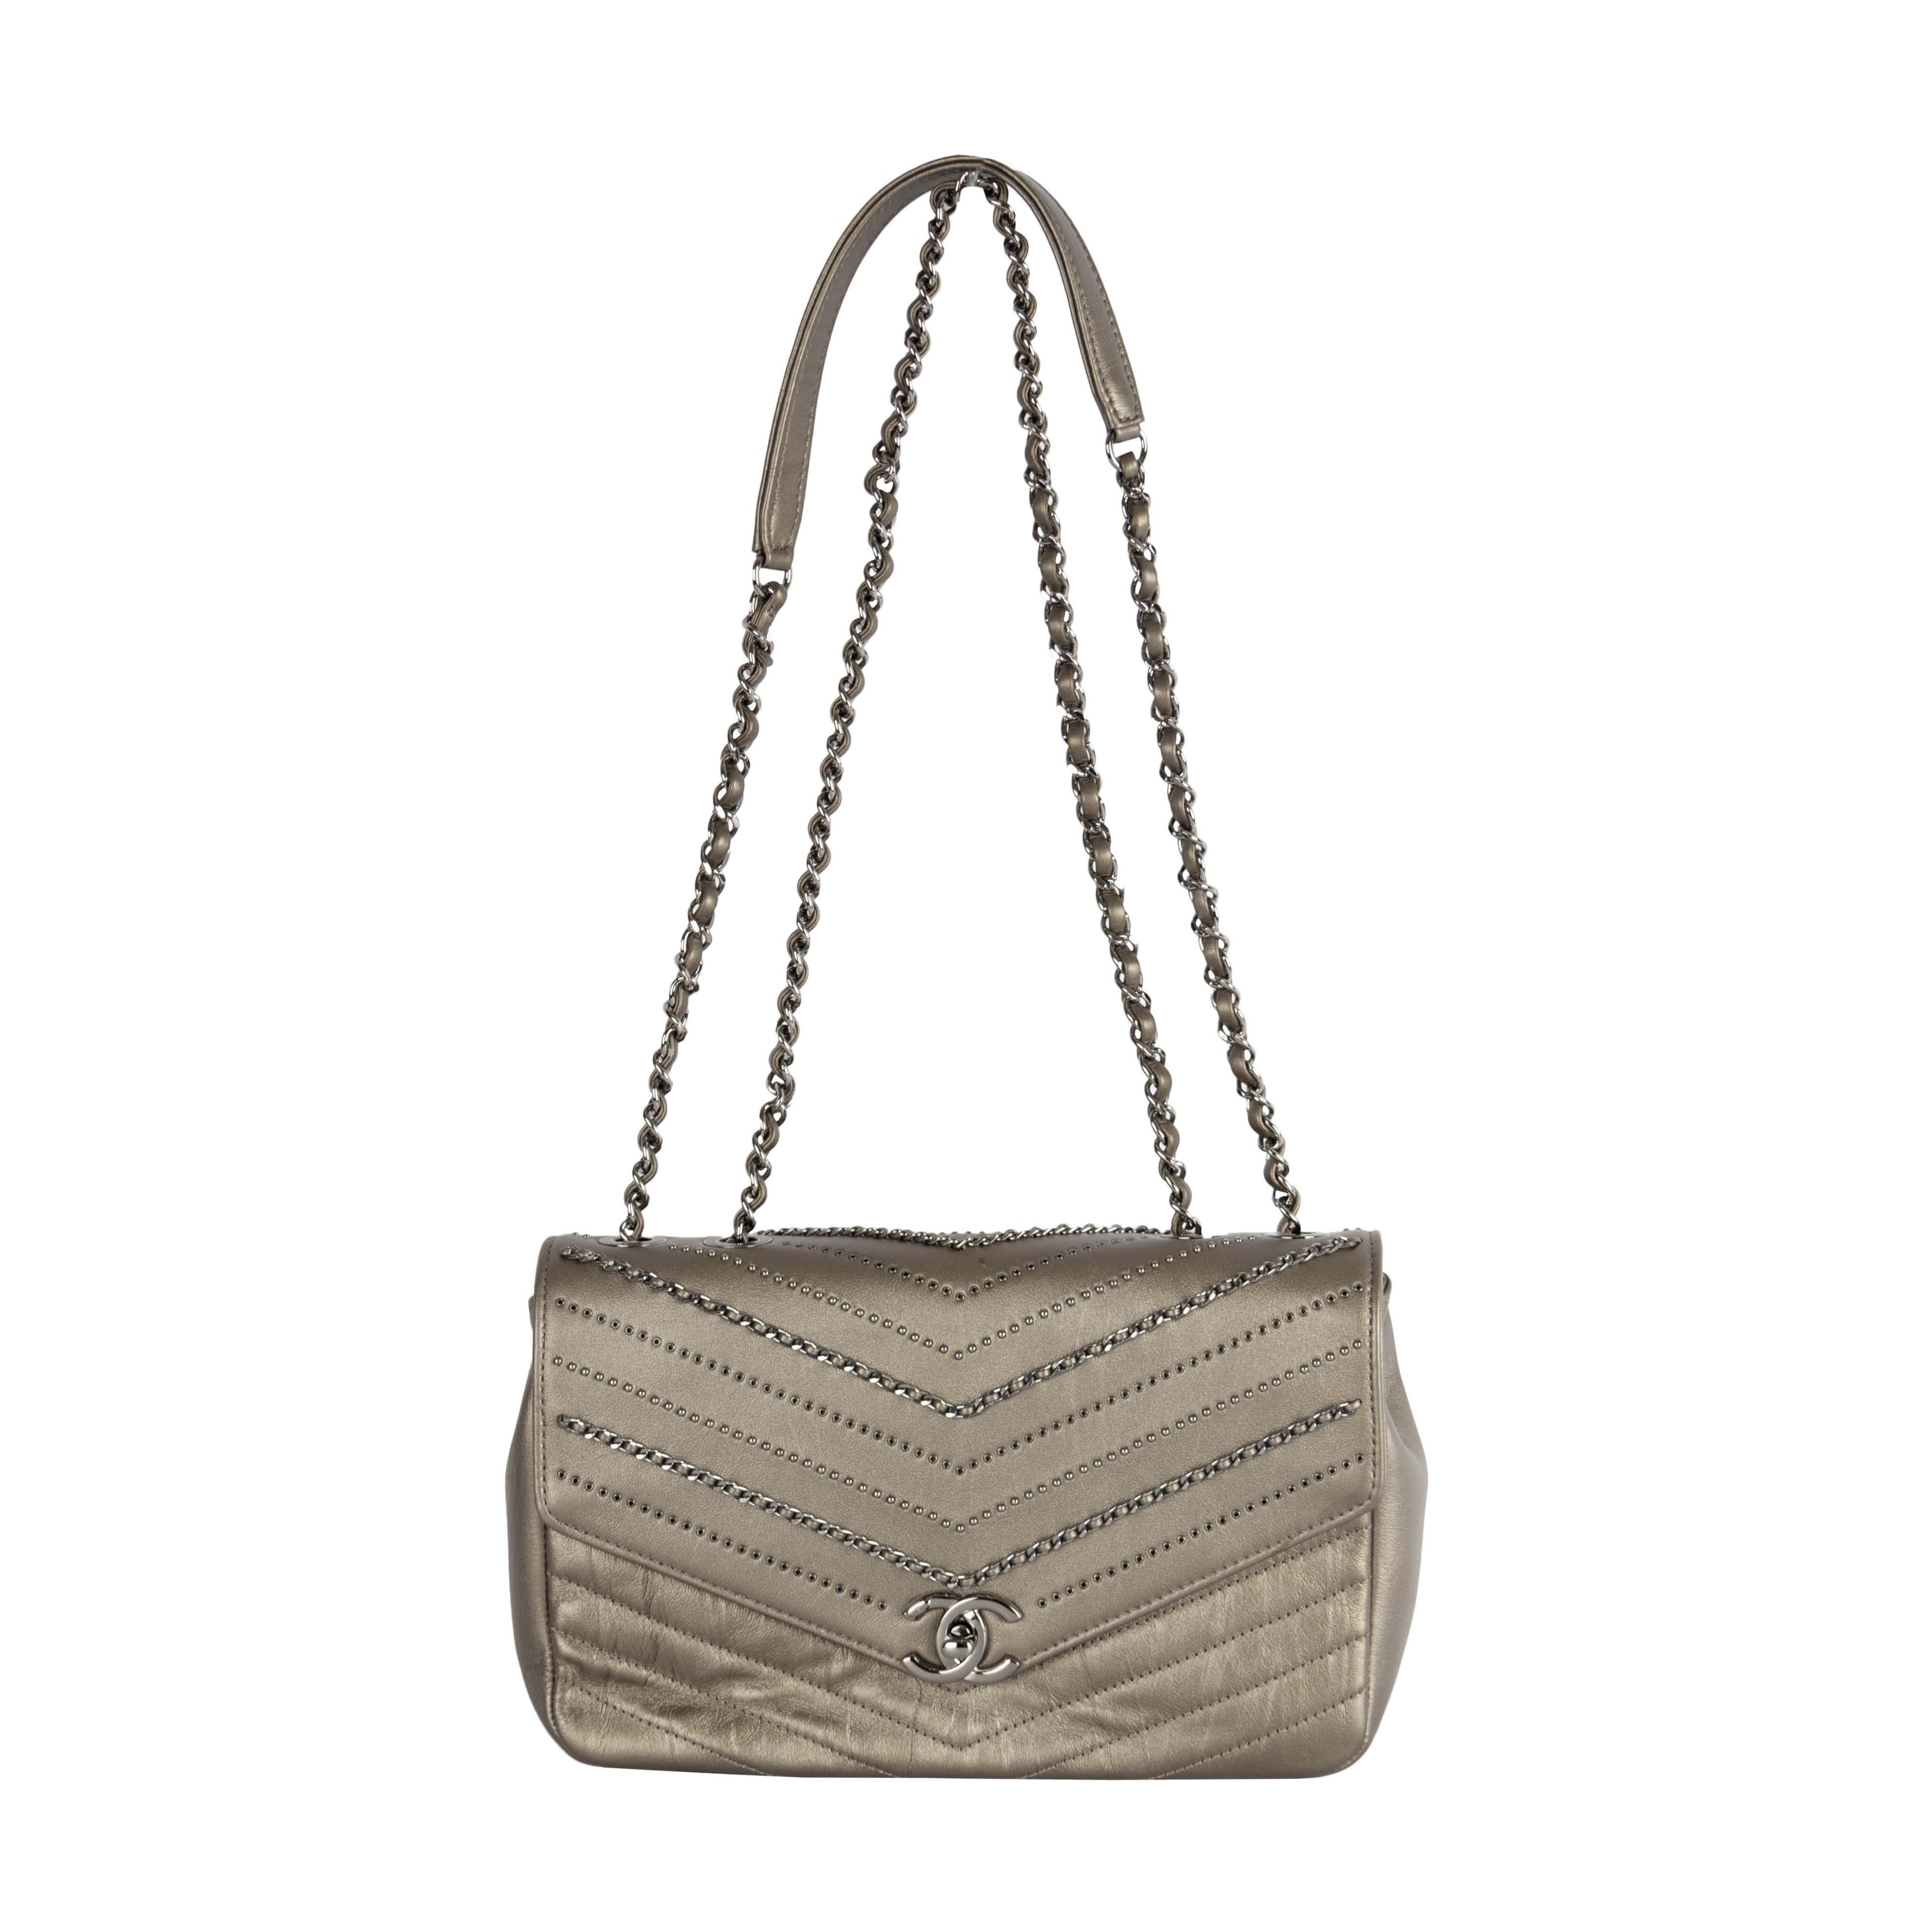 Die Chevron Flap Bag von Chanel aus der Herbst/Winter-Kollektion 2018 ist aus Kalbsleder in Silbermetallic gefertigt, das einen glitzernden Look und eine faszinierende Textur aufweist. Es verfügt über verzierte Ketten, die mit Lederriemen und